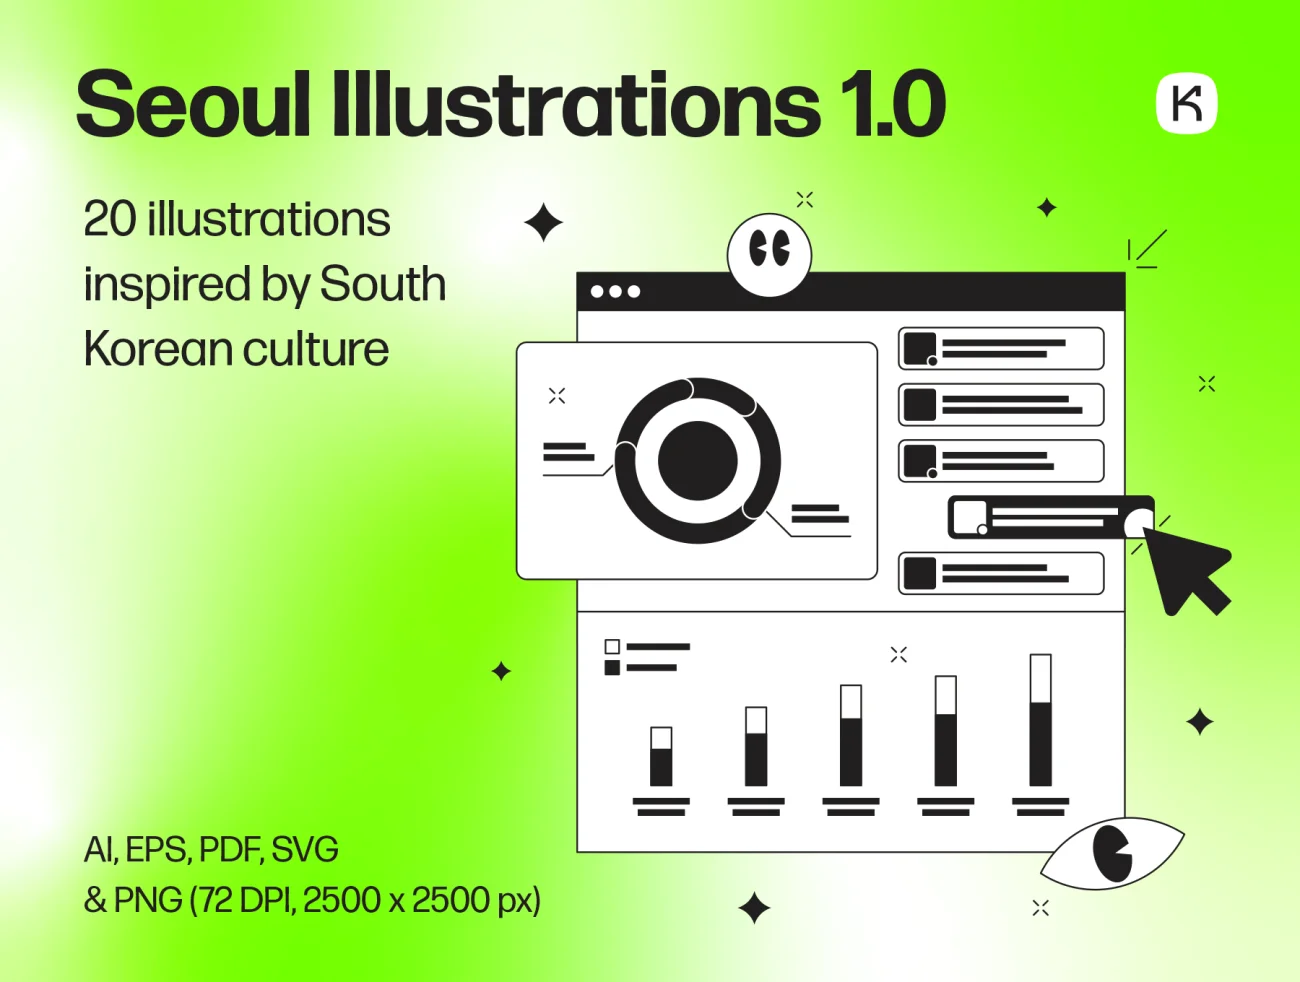 韩国风格矢量原型图插画 Seoul Illustrations .sketch .ai .ae .figma-商业金融、学习生活、插画、插画功能、插画风格、数据演示、科技智能、线条手绘、职场办公-到位啦UI